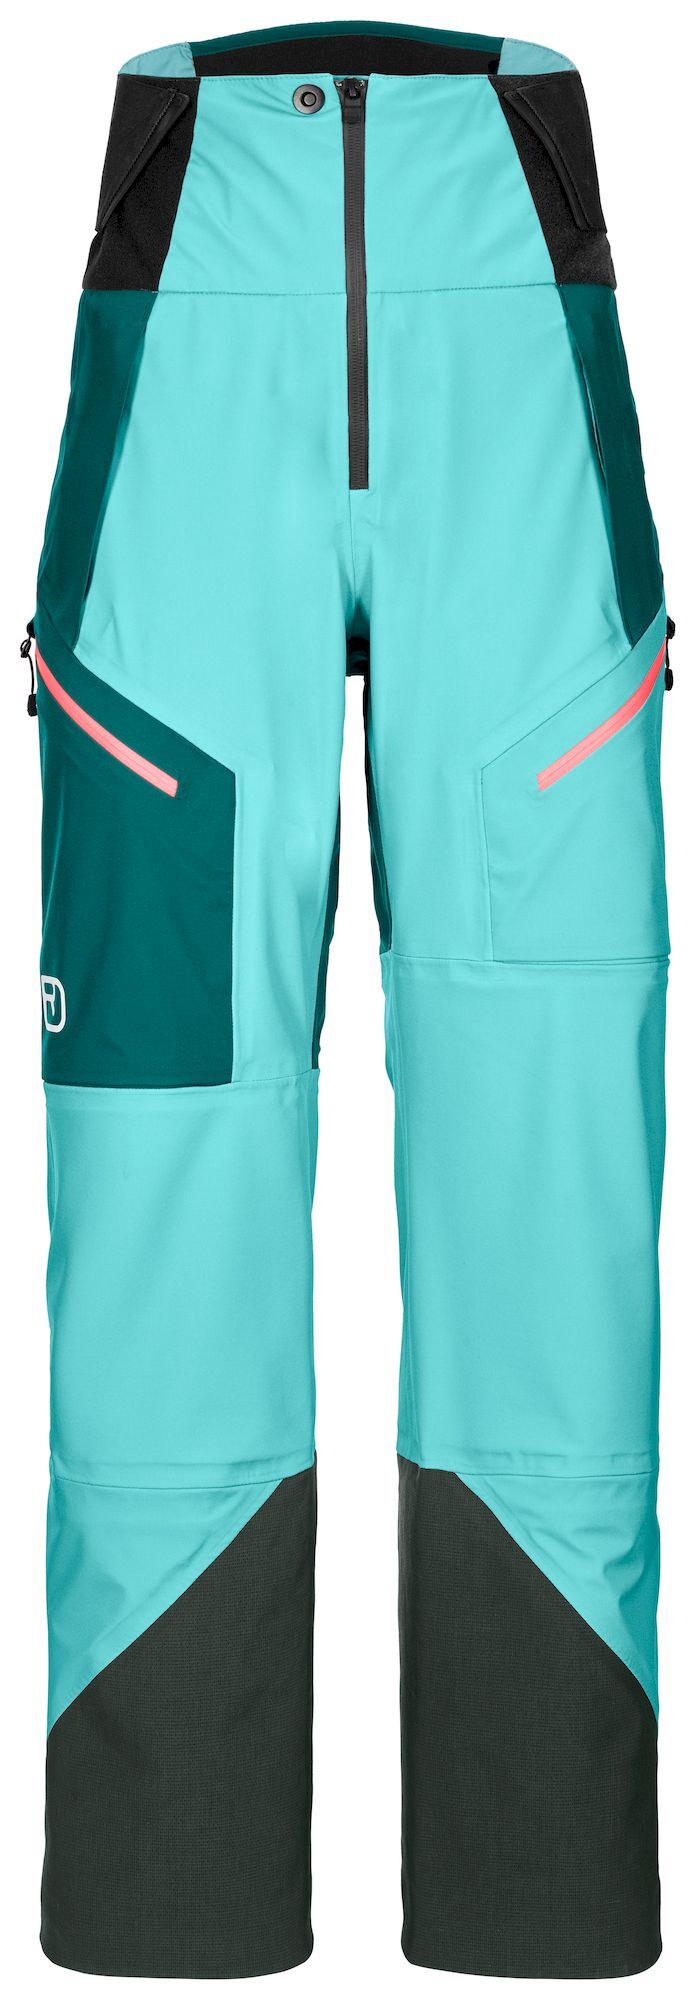 Ortovox 3L Guardian Shell Pants - DámskéLyžařské kalhoty